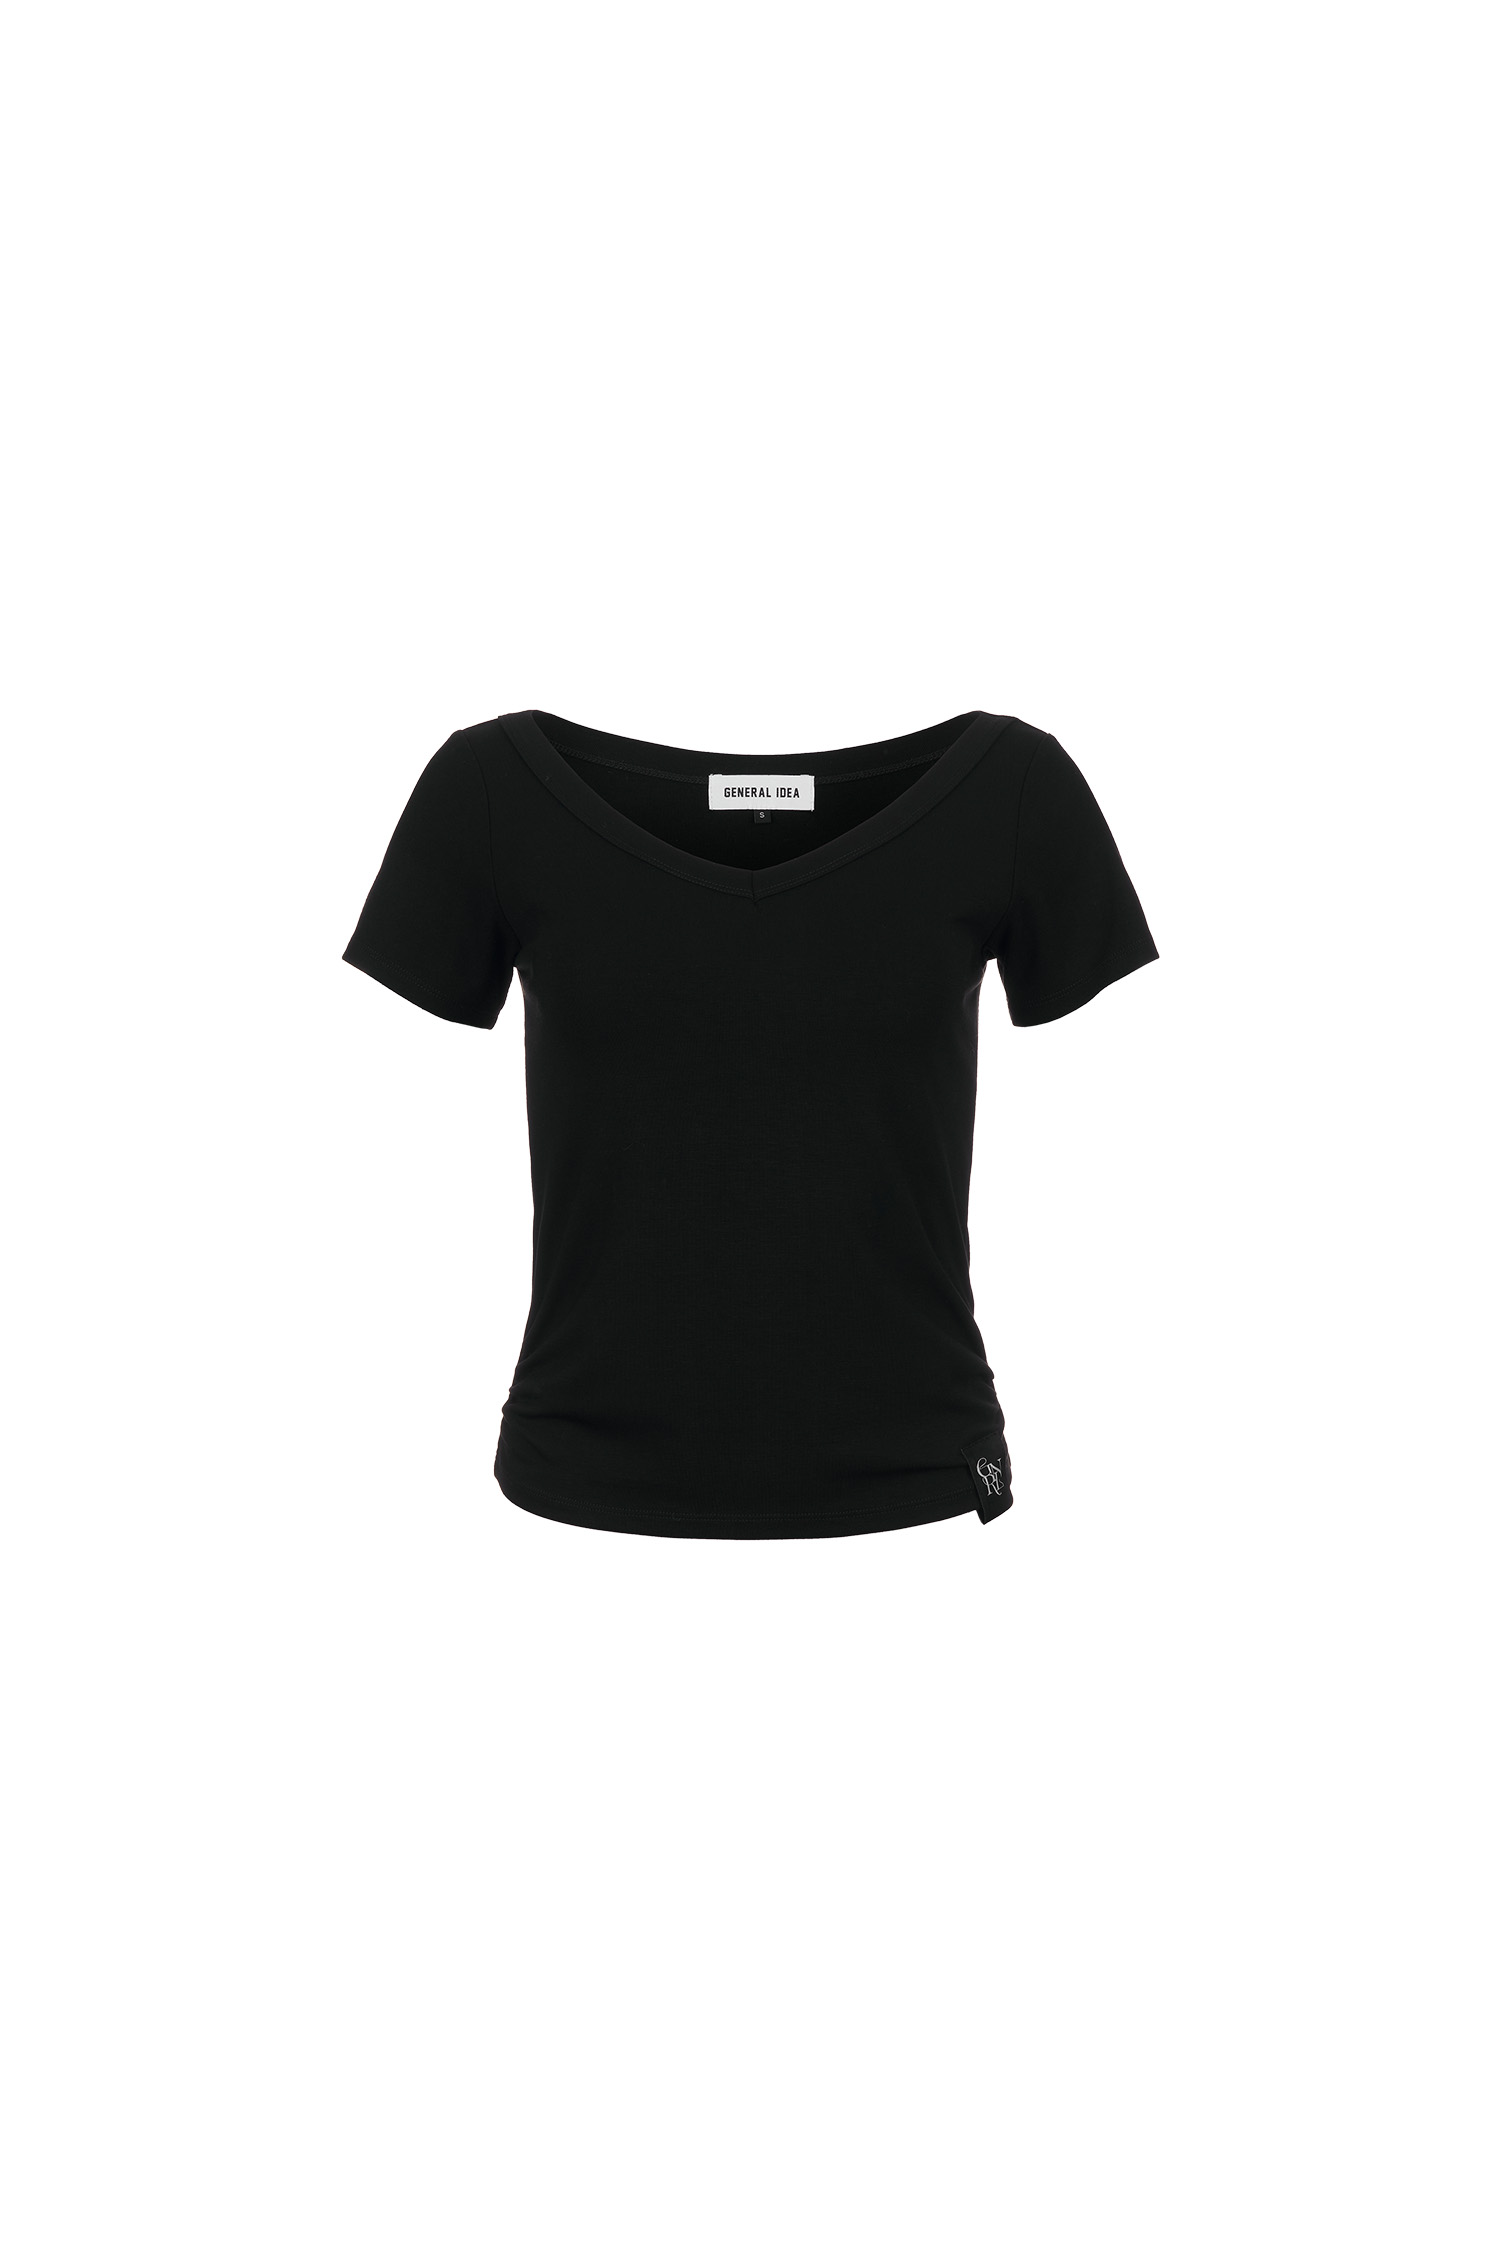 WOMAN 브이넥 셔링 하프 티셔츠 [BLACK]